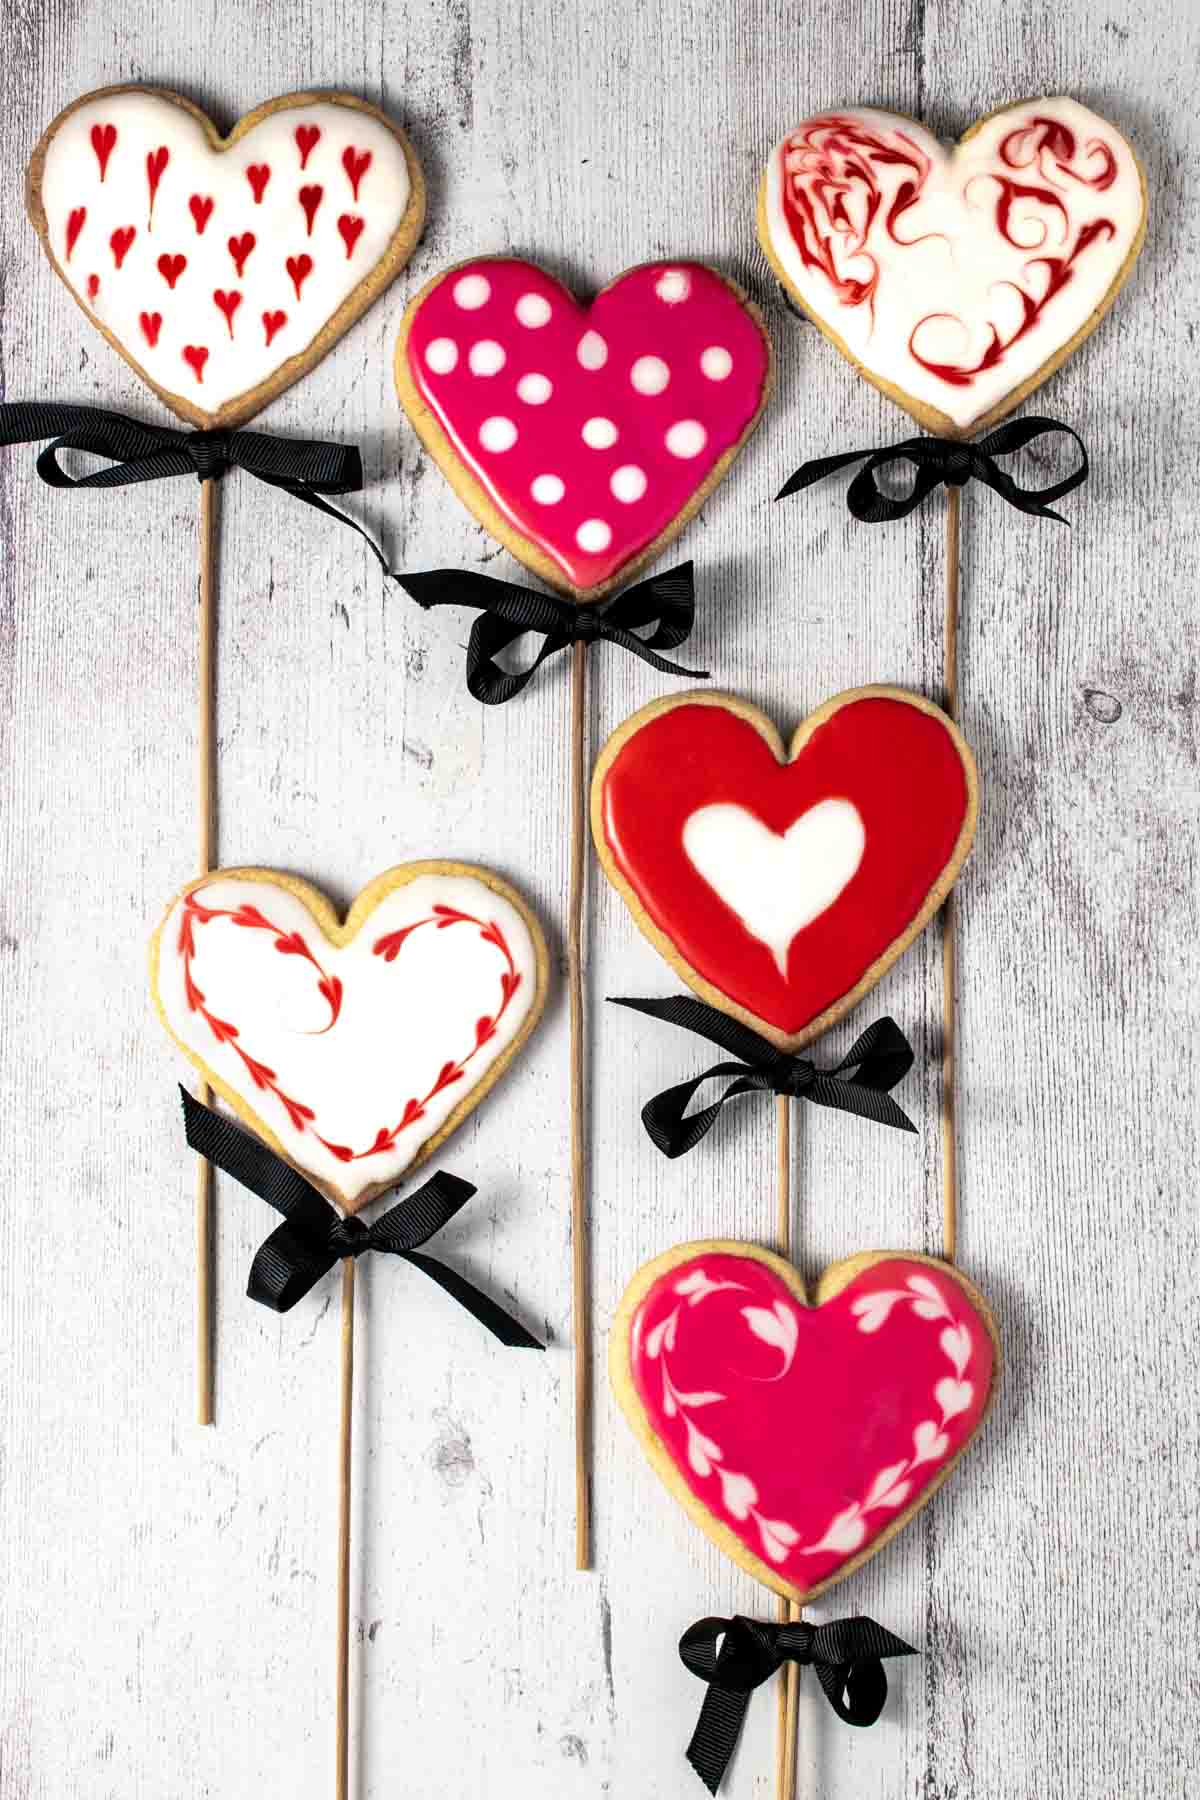 Six valentine's biscuits on sticks.